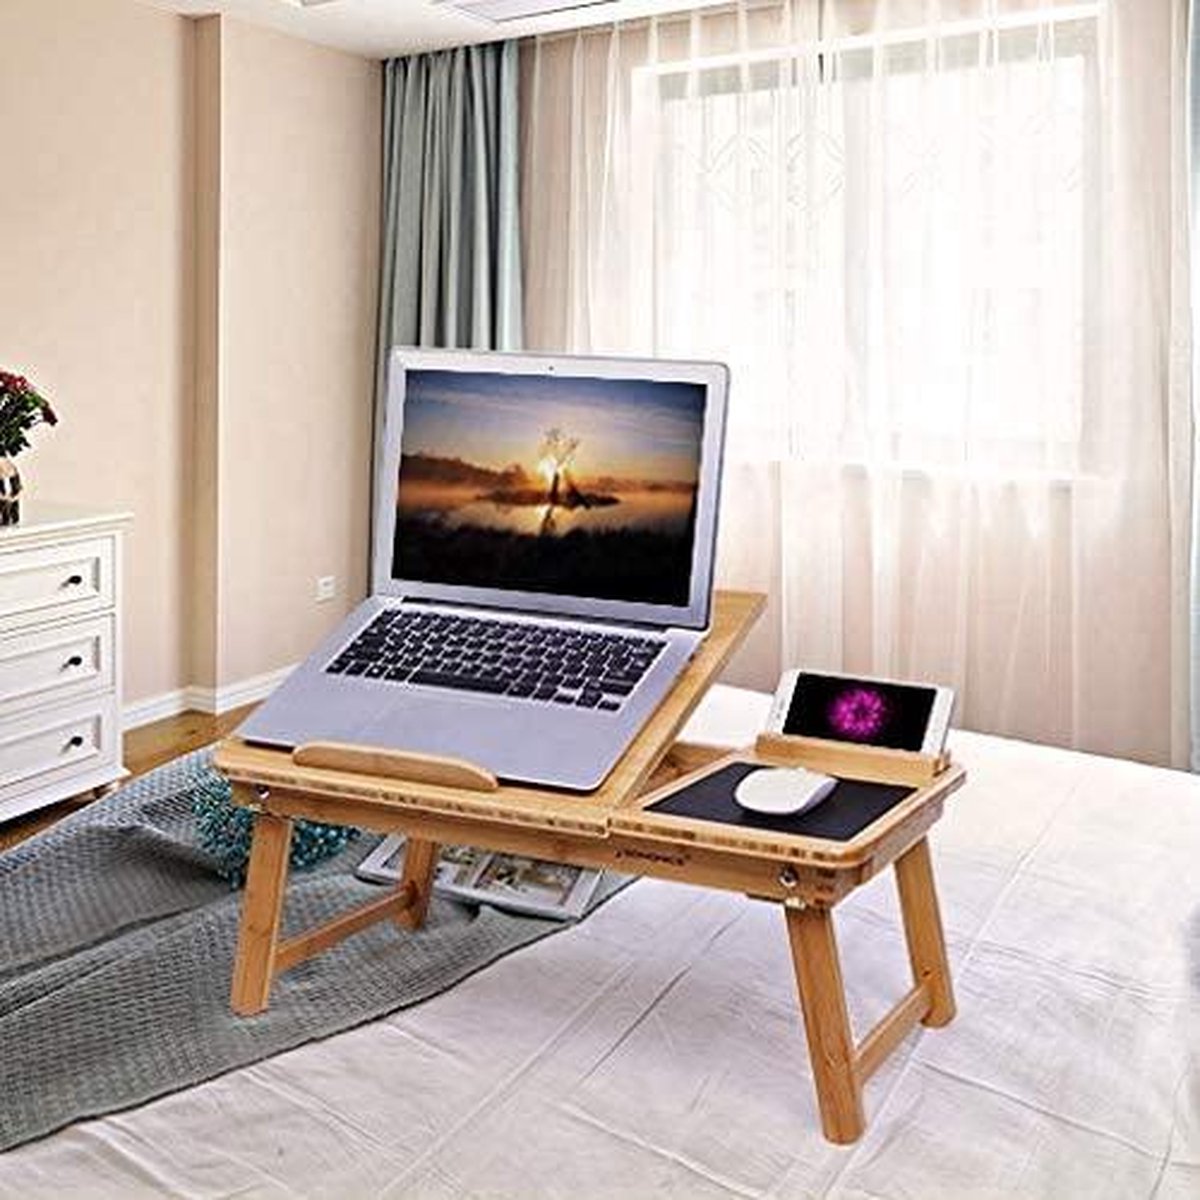 Opvouwbare laptoptafel voor bank of bed, nachtkastje met penhouder voor mobiele telefoon en lade, verstelbare hellingshoek, notebooktafel van bamboe, 55 x 23 x 35 cm (B x H x D) LLD006